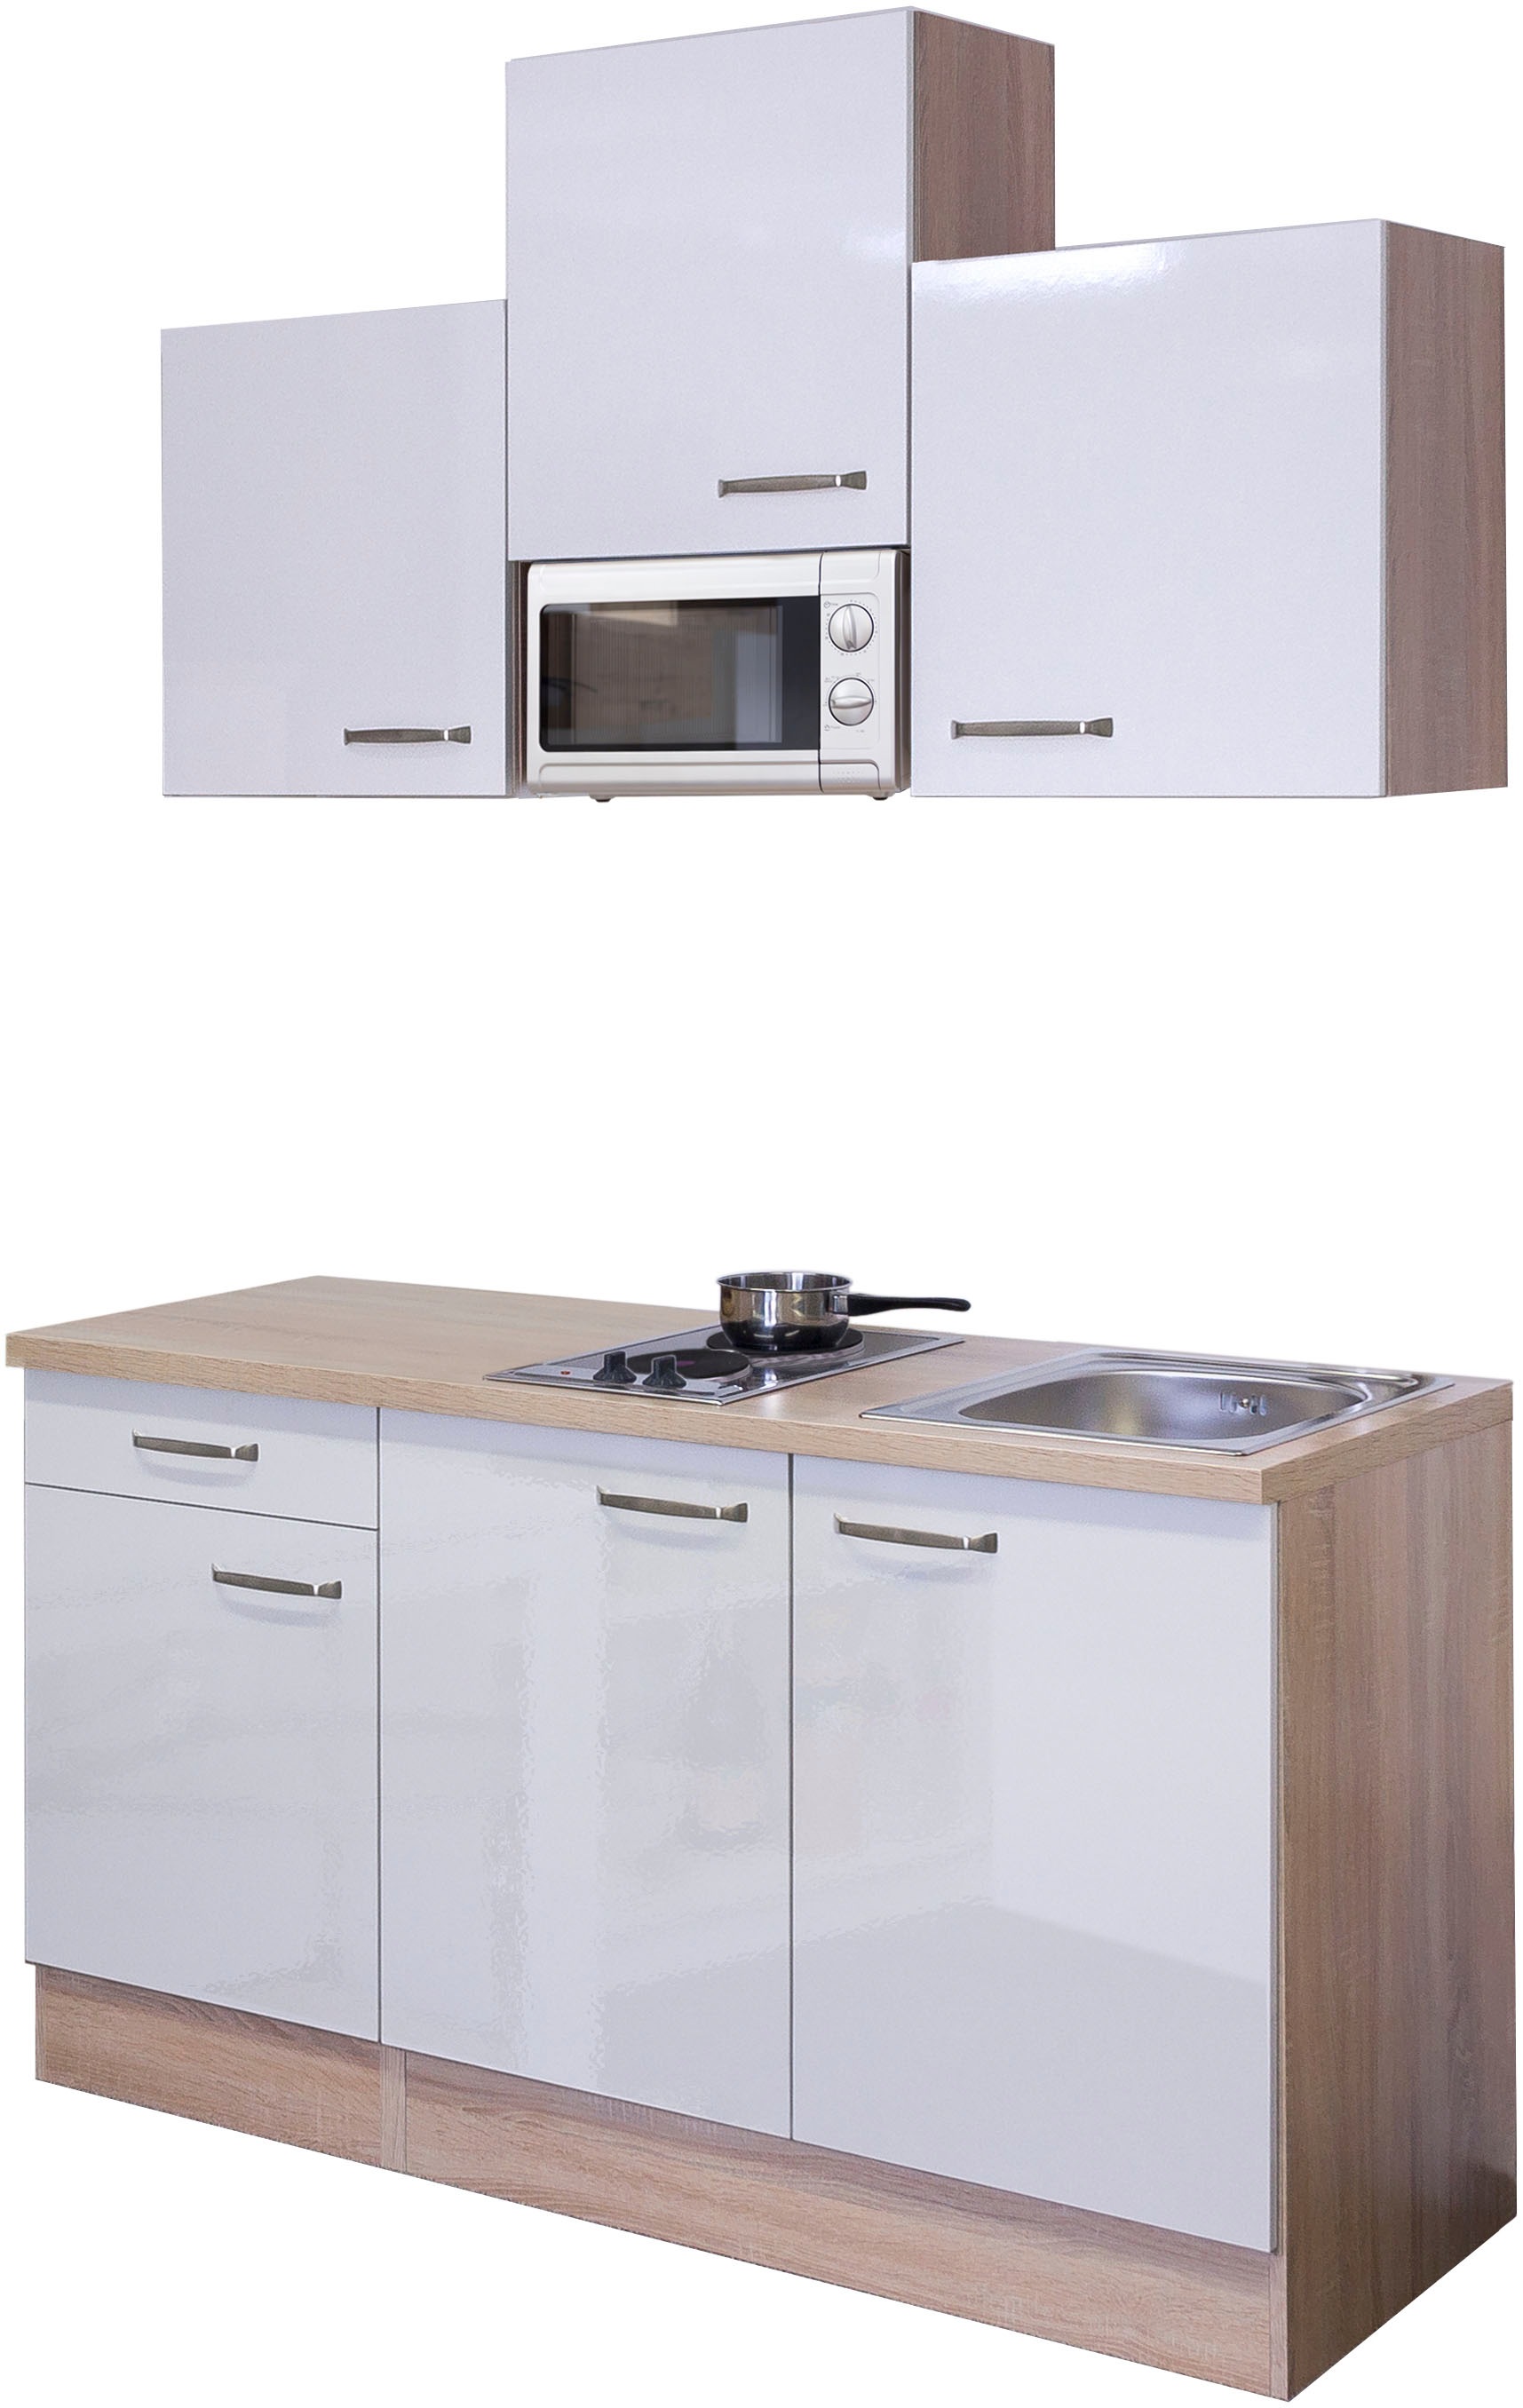 Flex-Well Küche "Florenz", Gesamtbreite 150cm, mit Mikrowelle und Kochfeld, viele Farbenvarianten